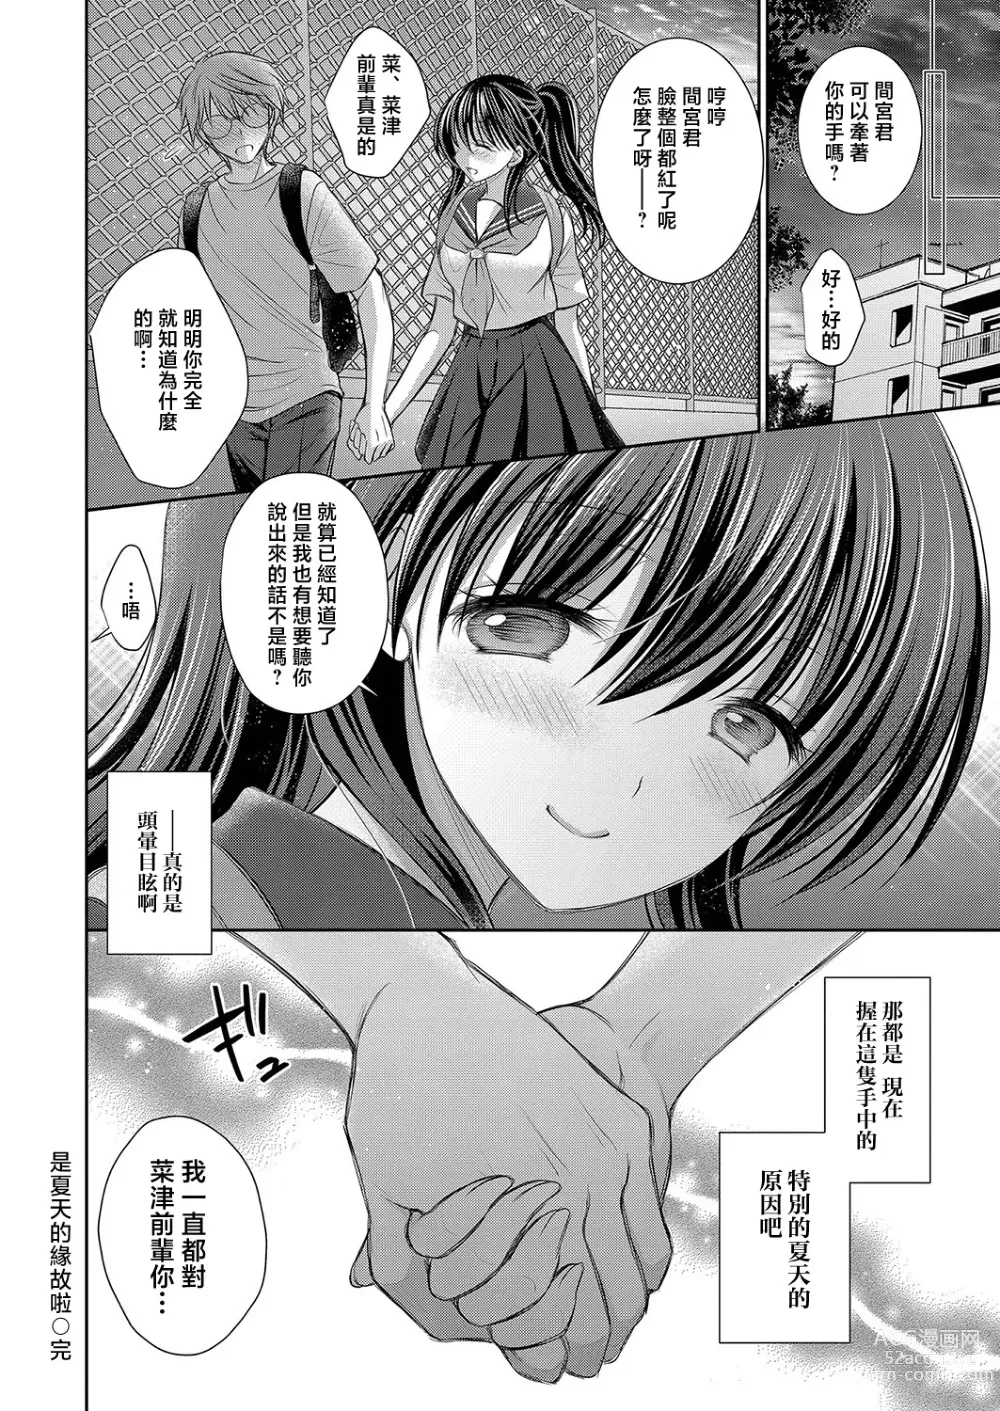 Page 16 of manga Natsu no Sei da yo